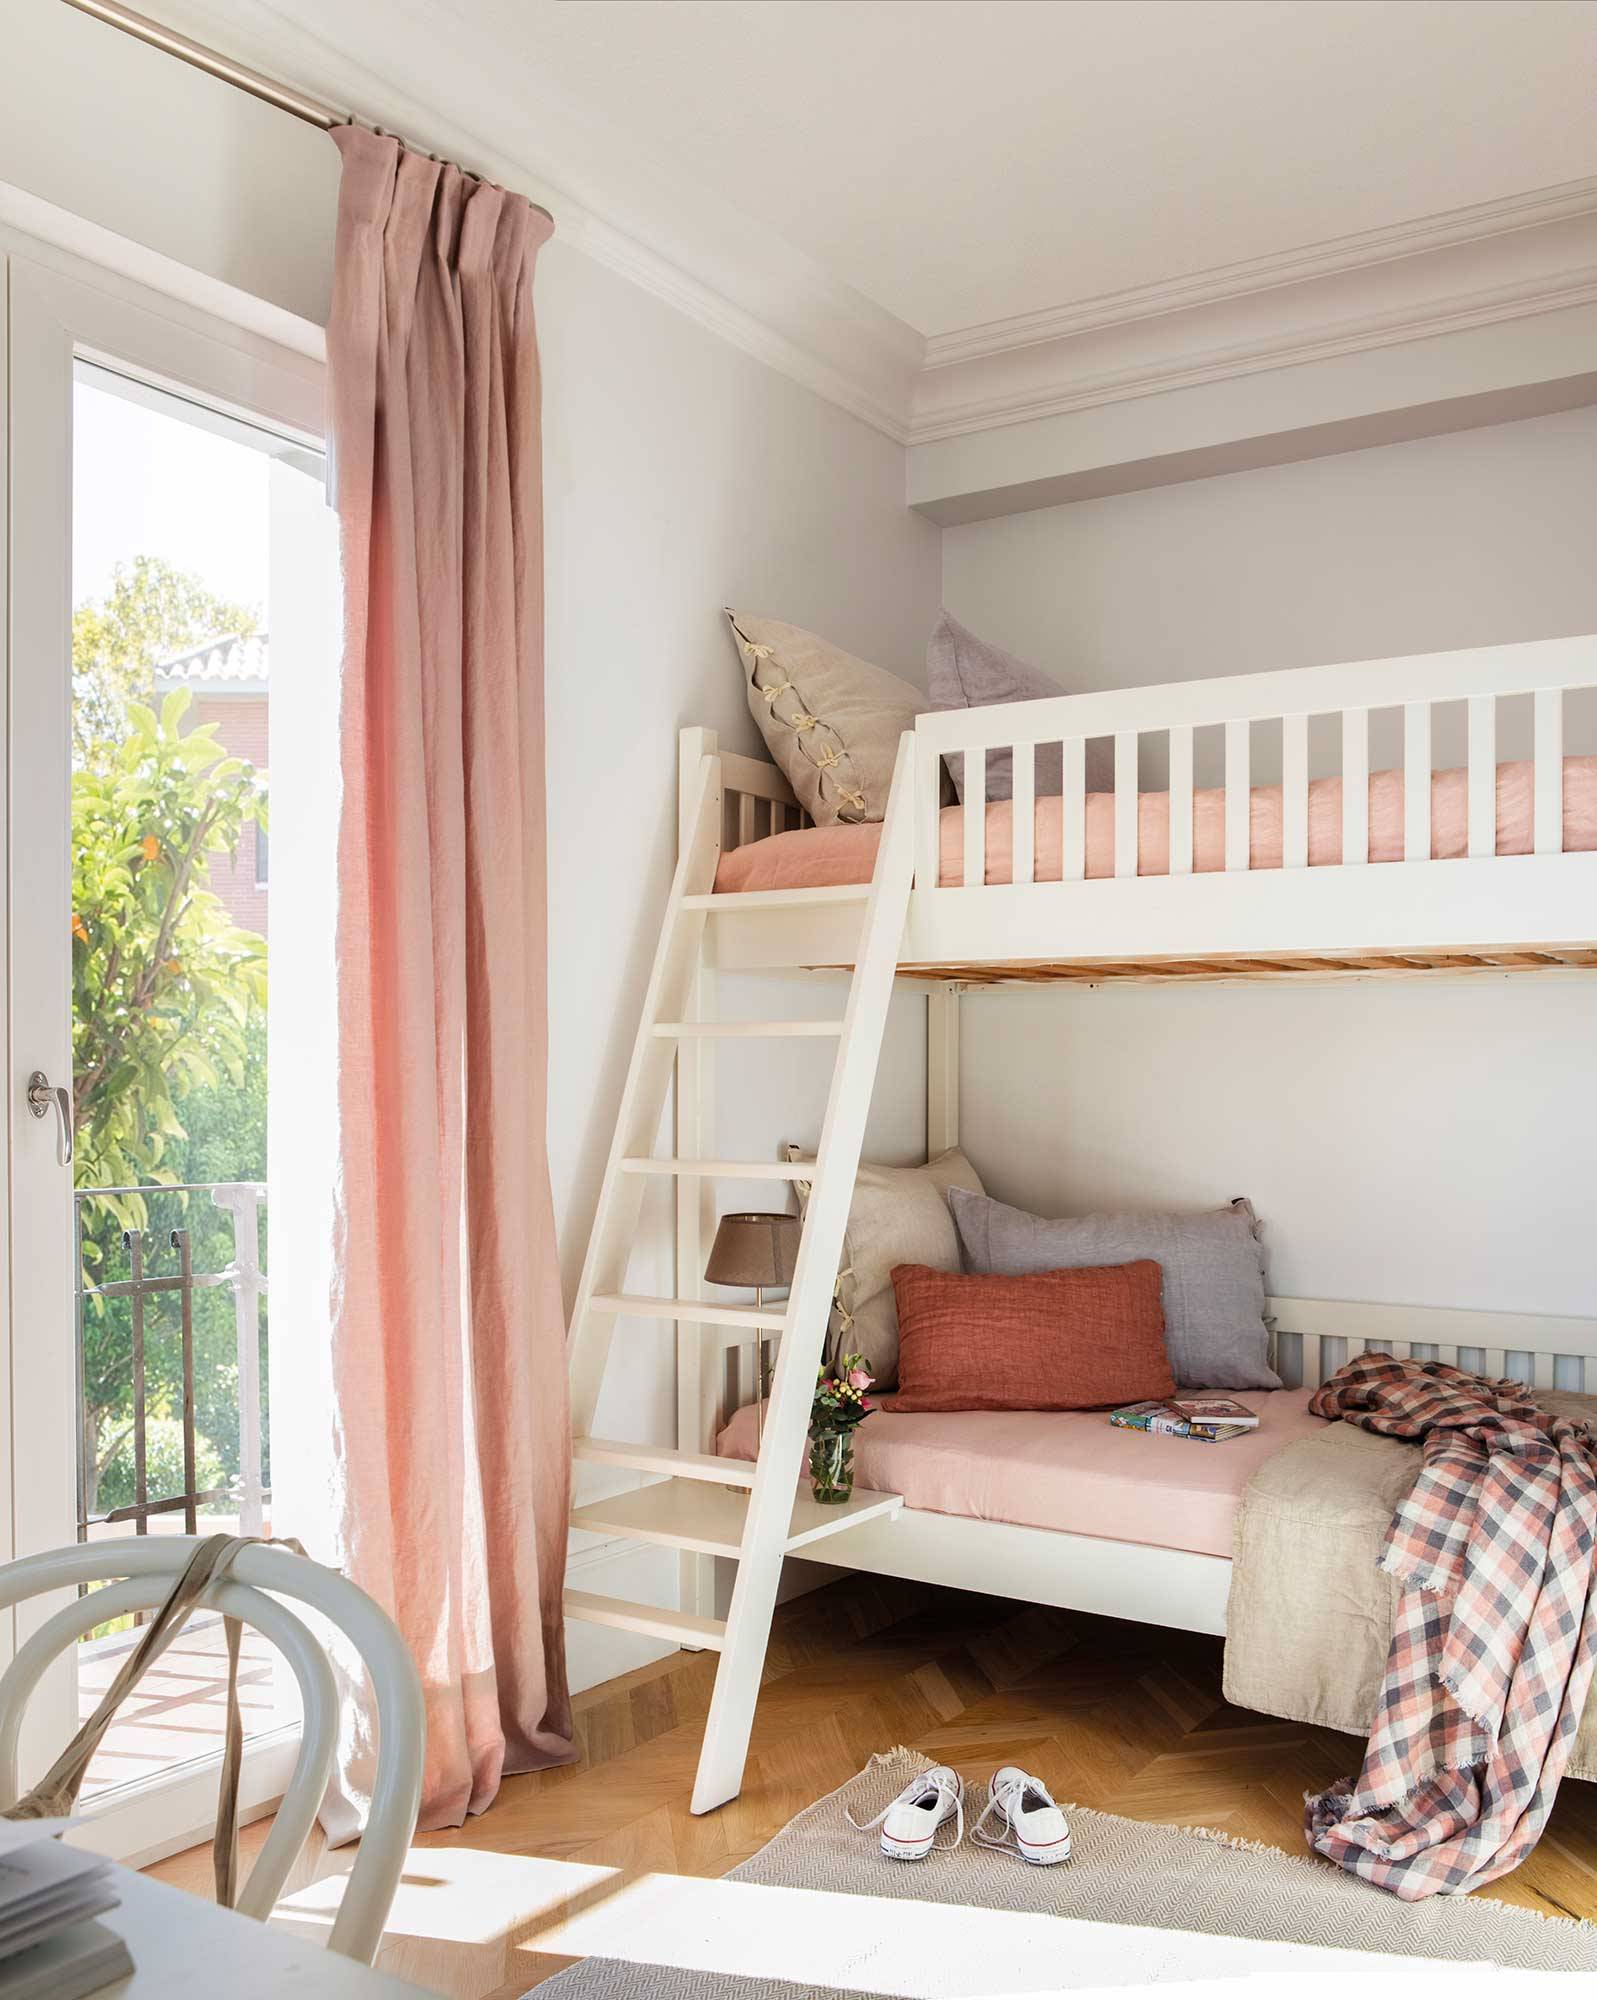 Dormitorio infantil en rosa empolvado con literas.